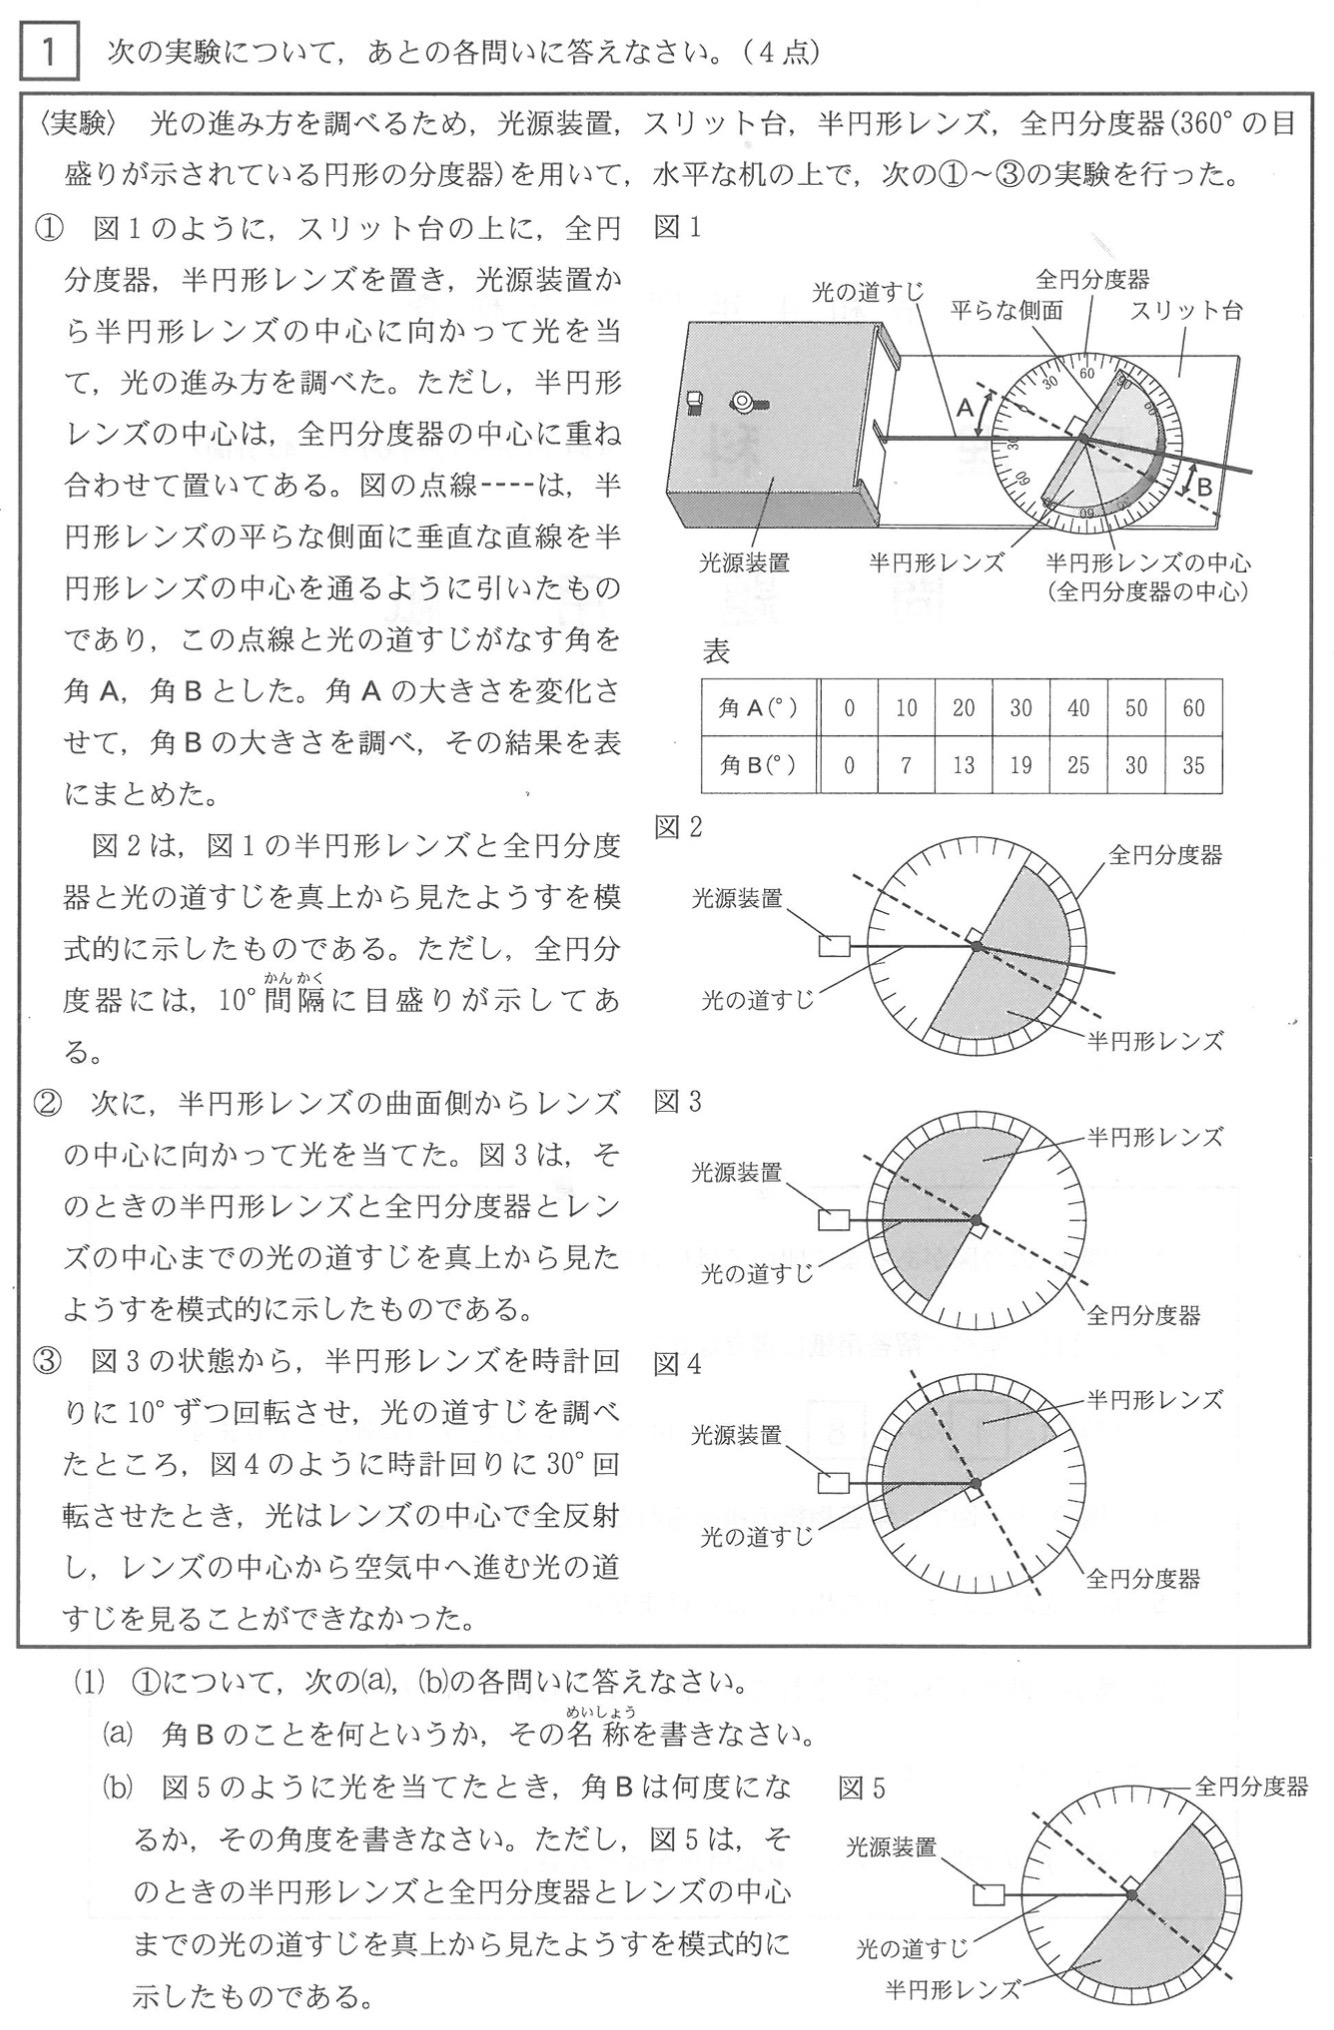 三重県公立高校入試理科2022年(令和4年)過去問題